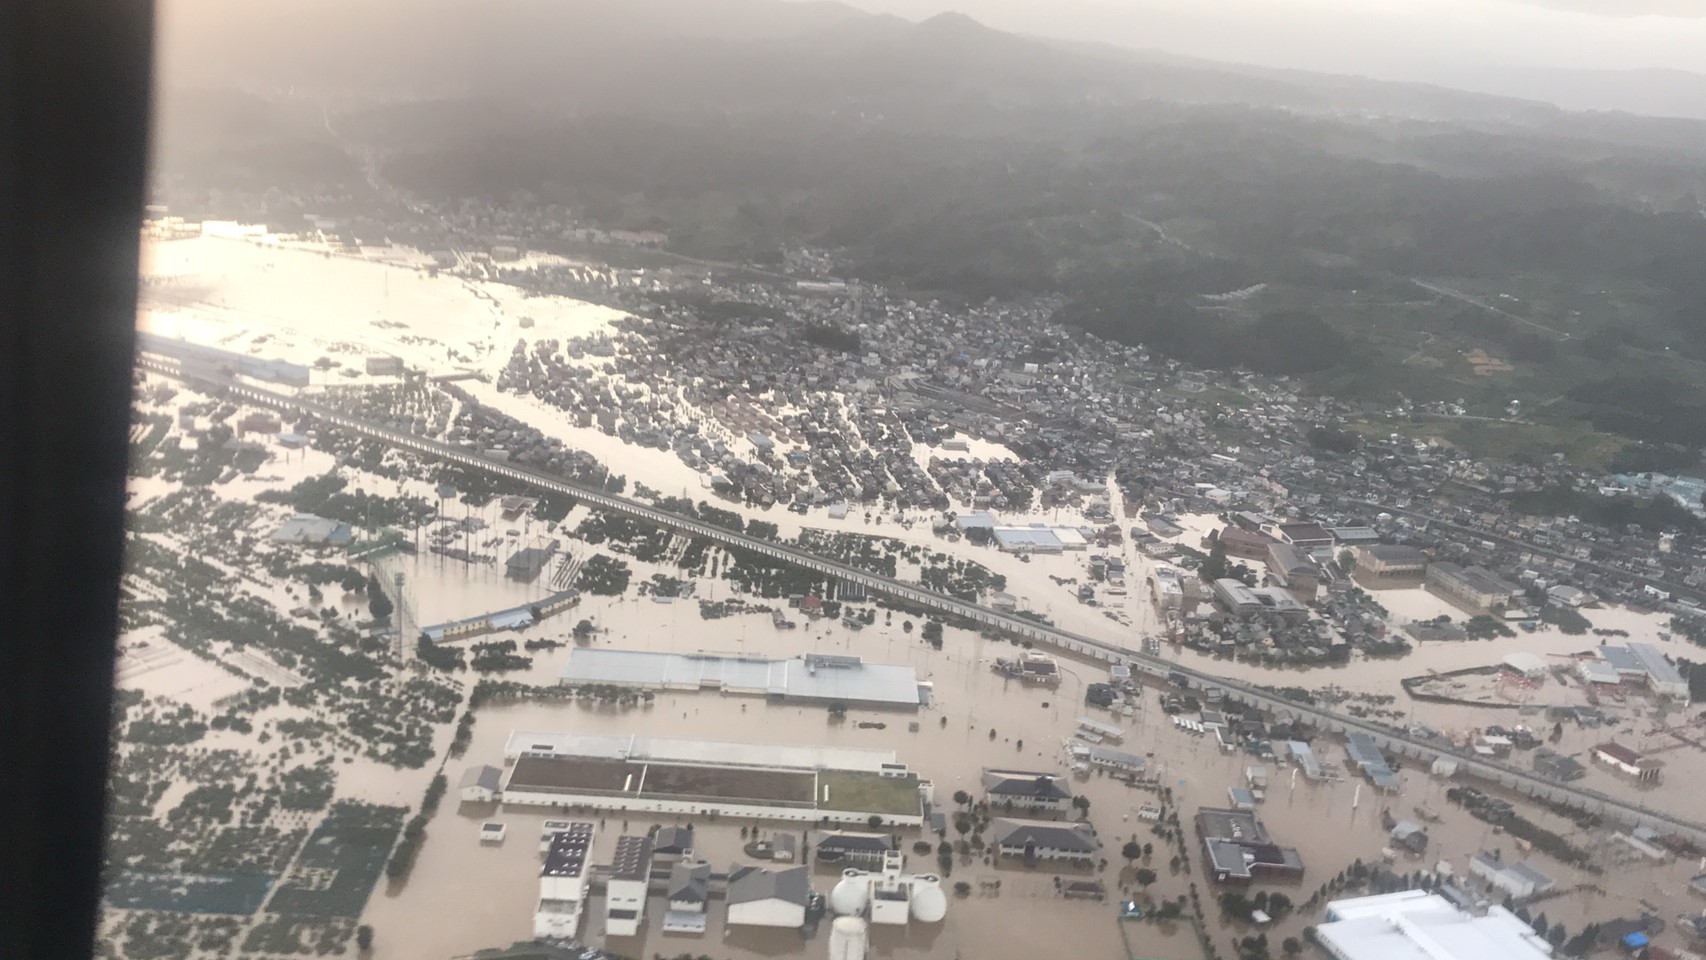 【災害支援】広範囲にわたり甚大な被害をもたらした台風19号発生から2年